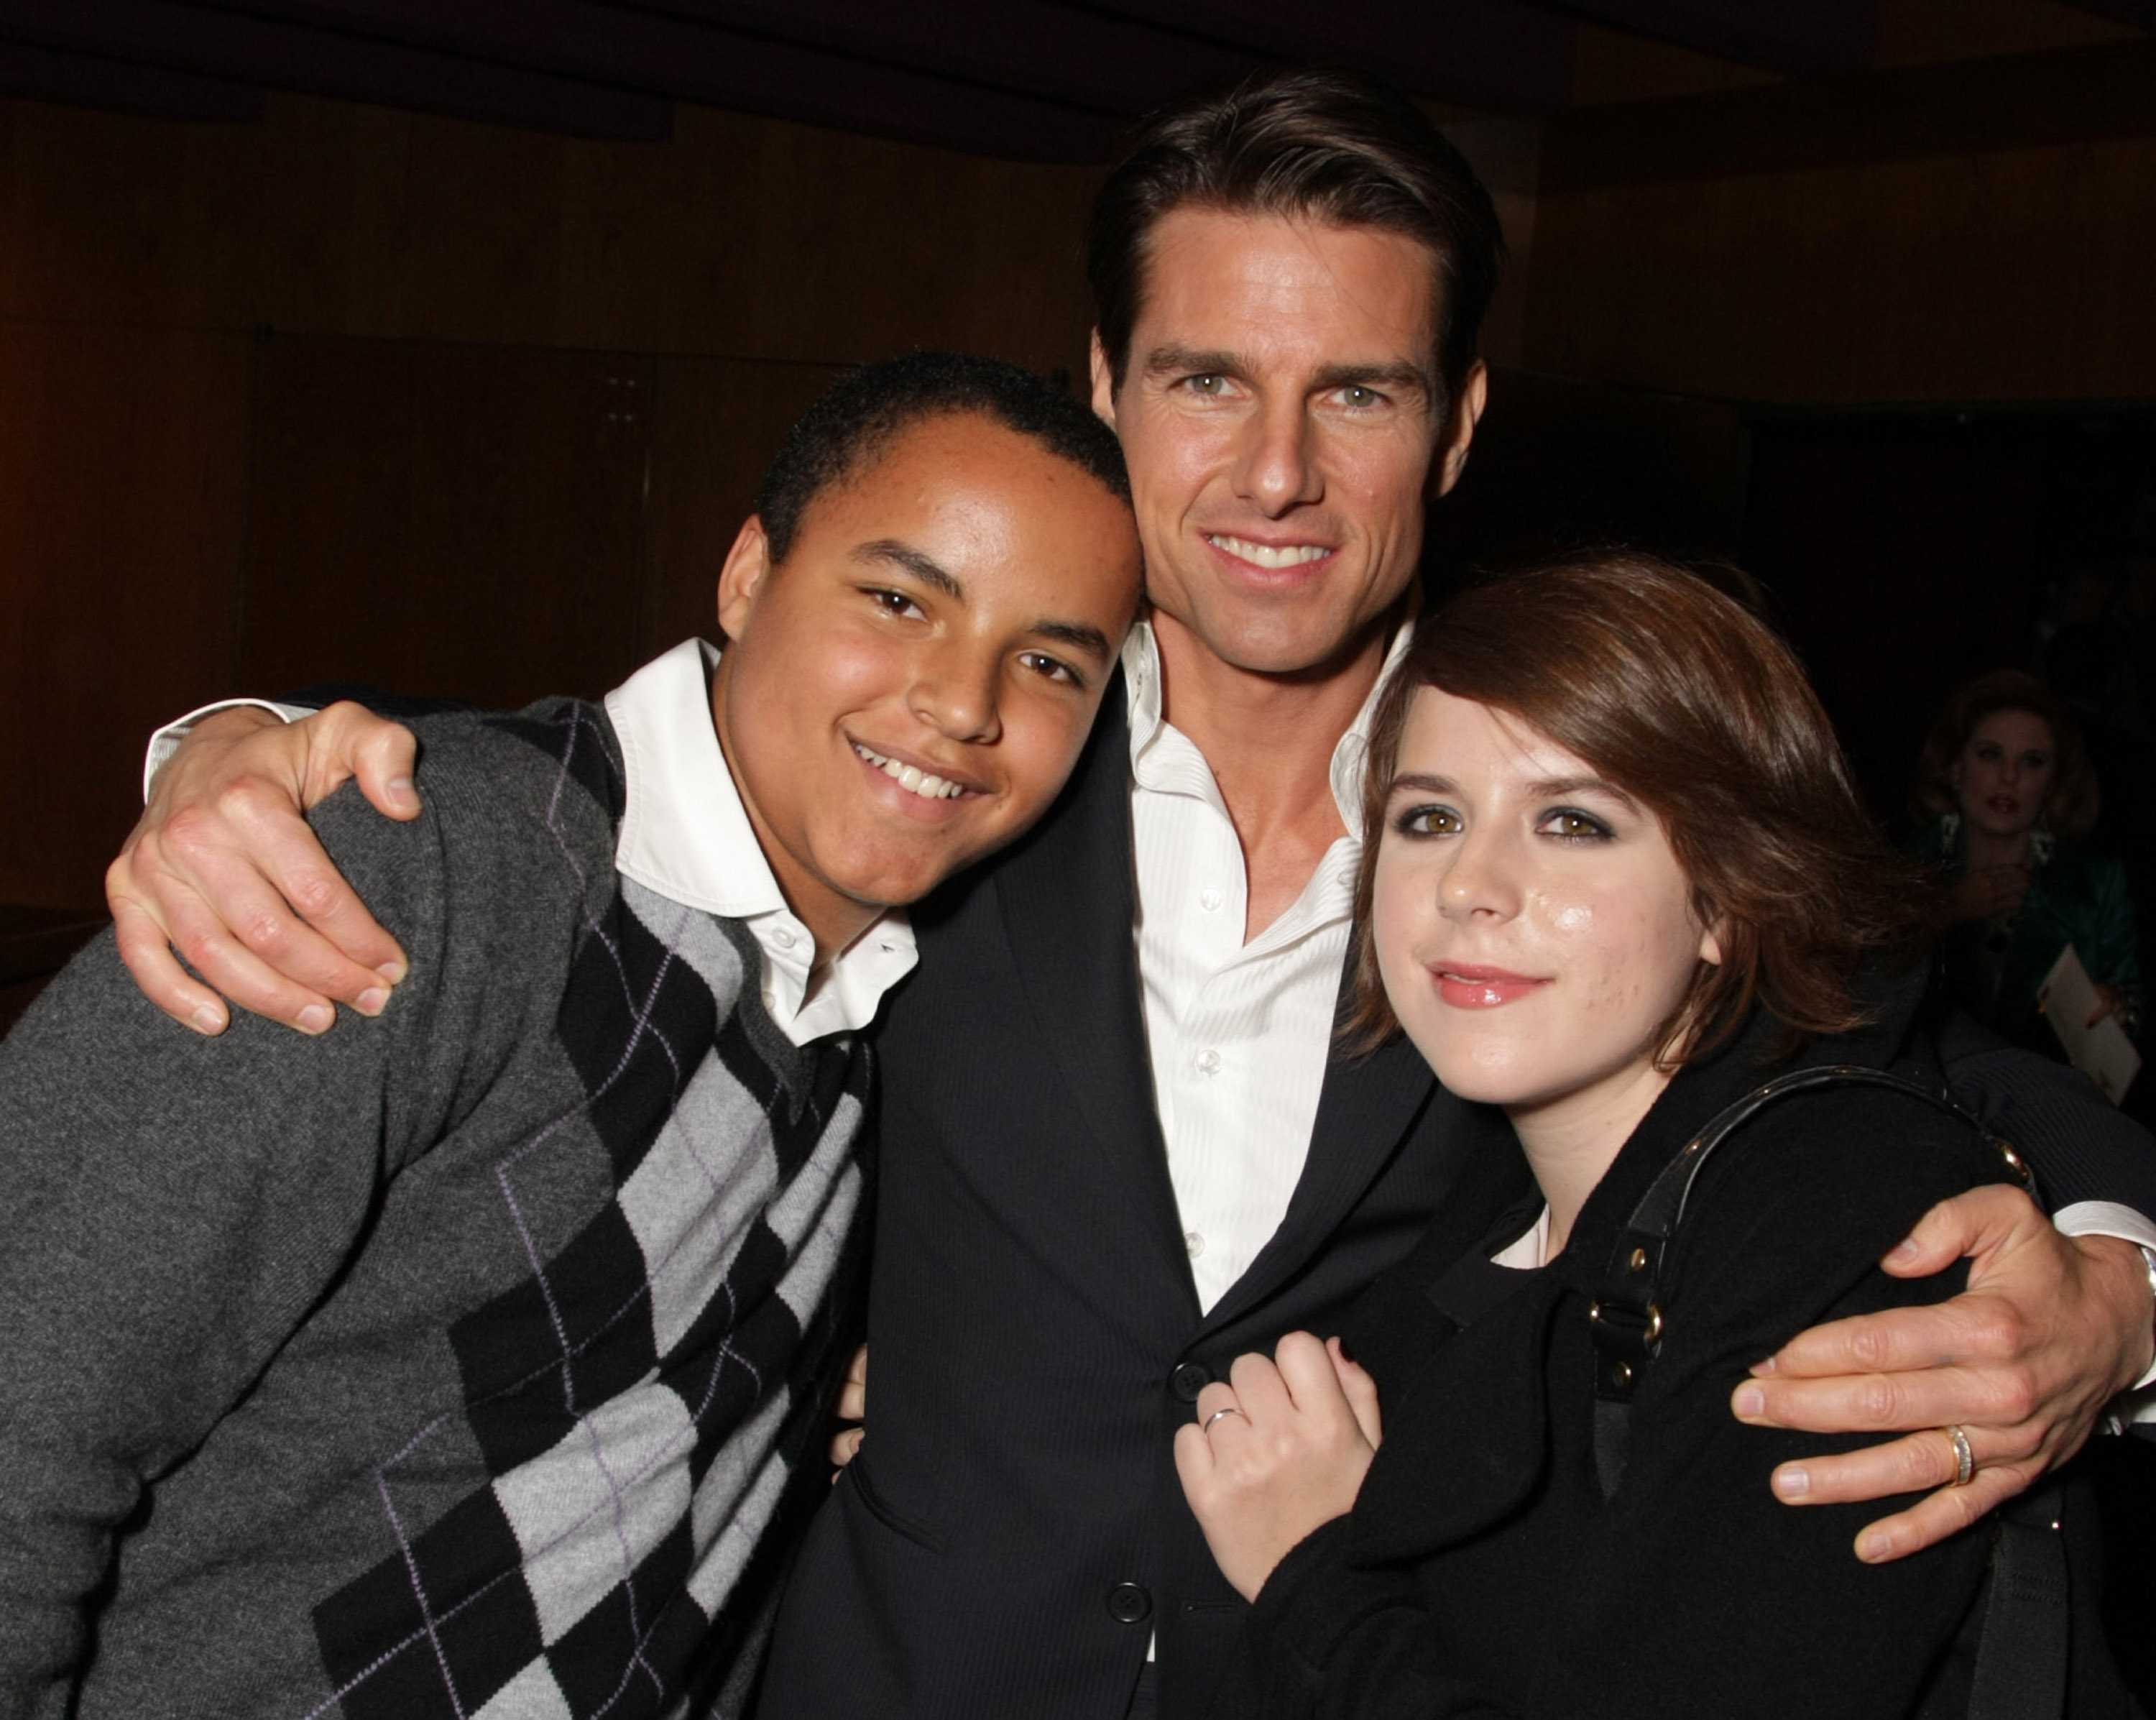 Connor, Tom und Isabella Cruise bei der United Artists Pictures und MGM Premiere von "Valkyrie" in Los Angeles, Kalifornien, am 18. Dezember 2008 | Quelle: Getty Images